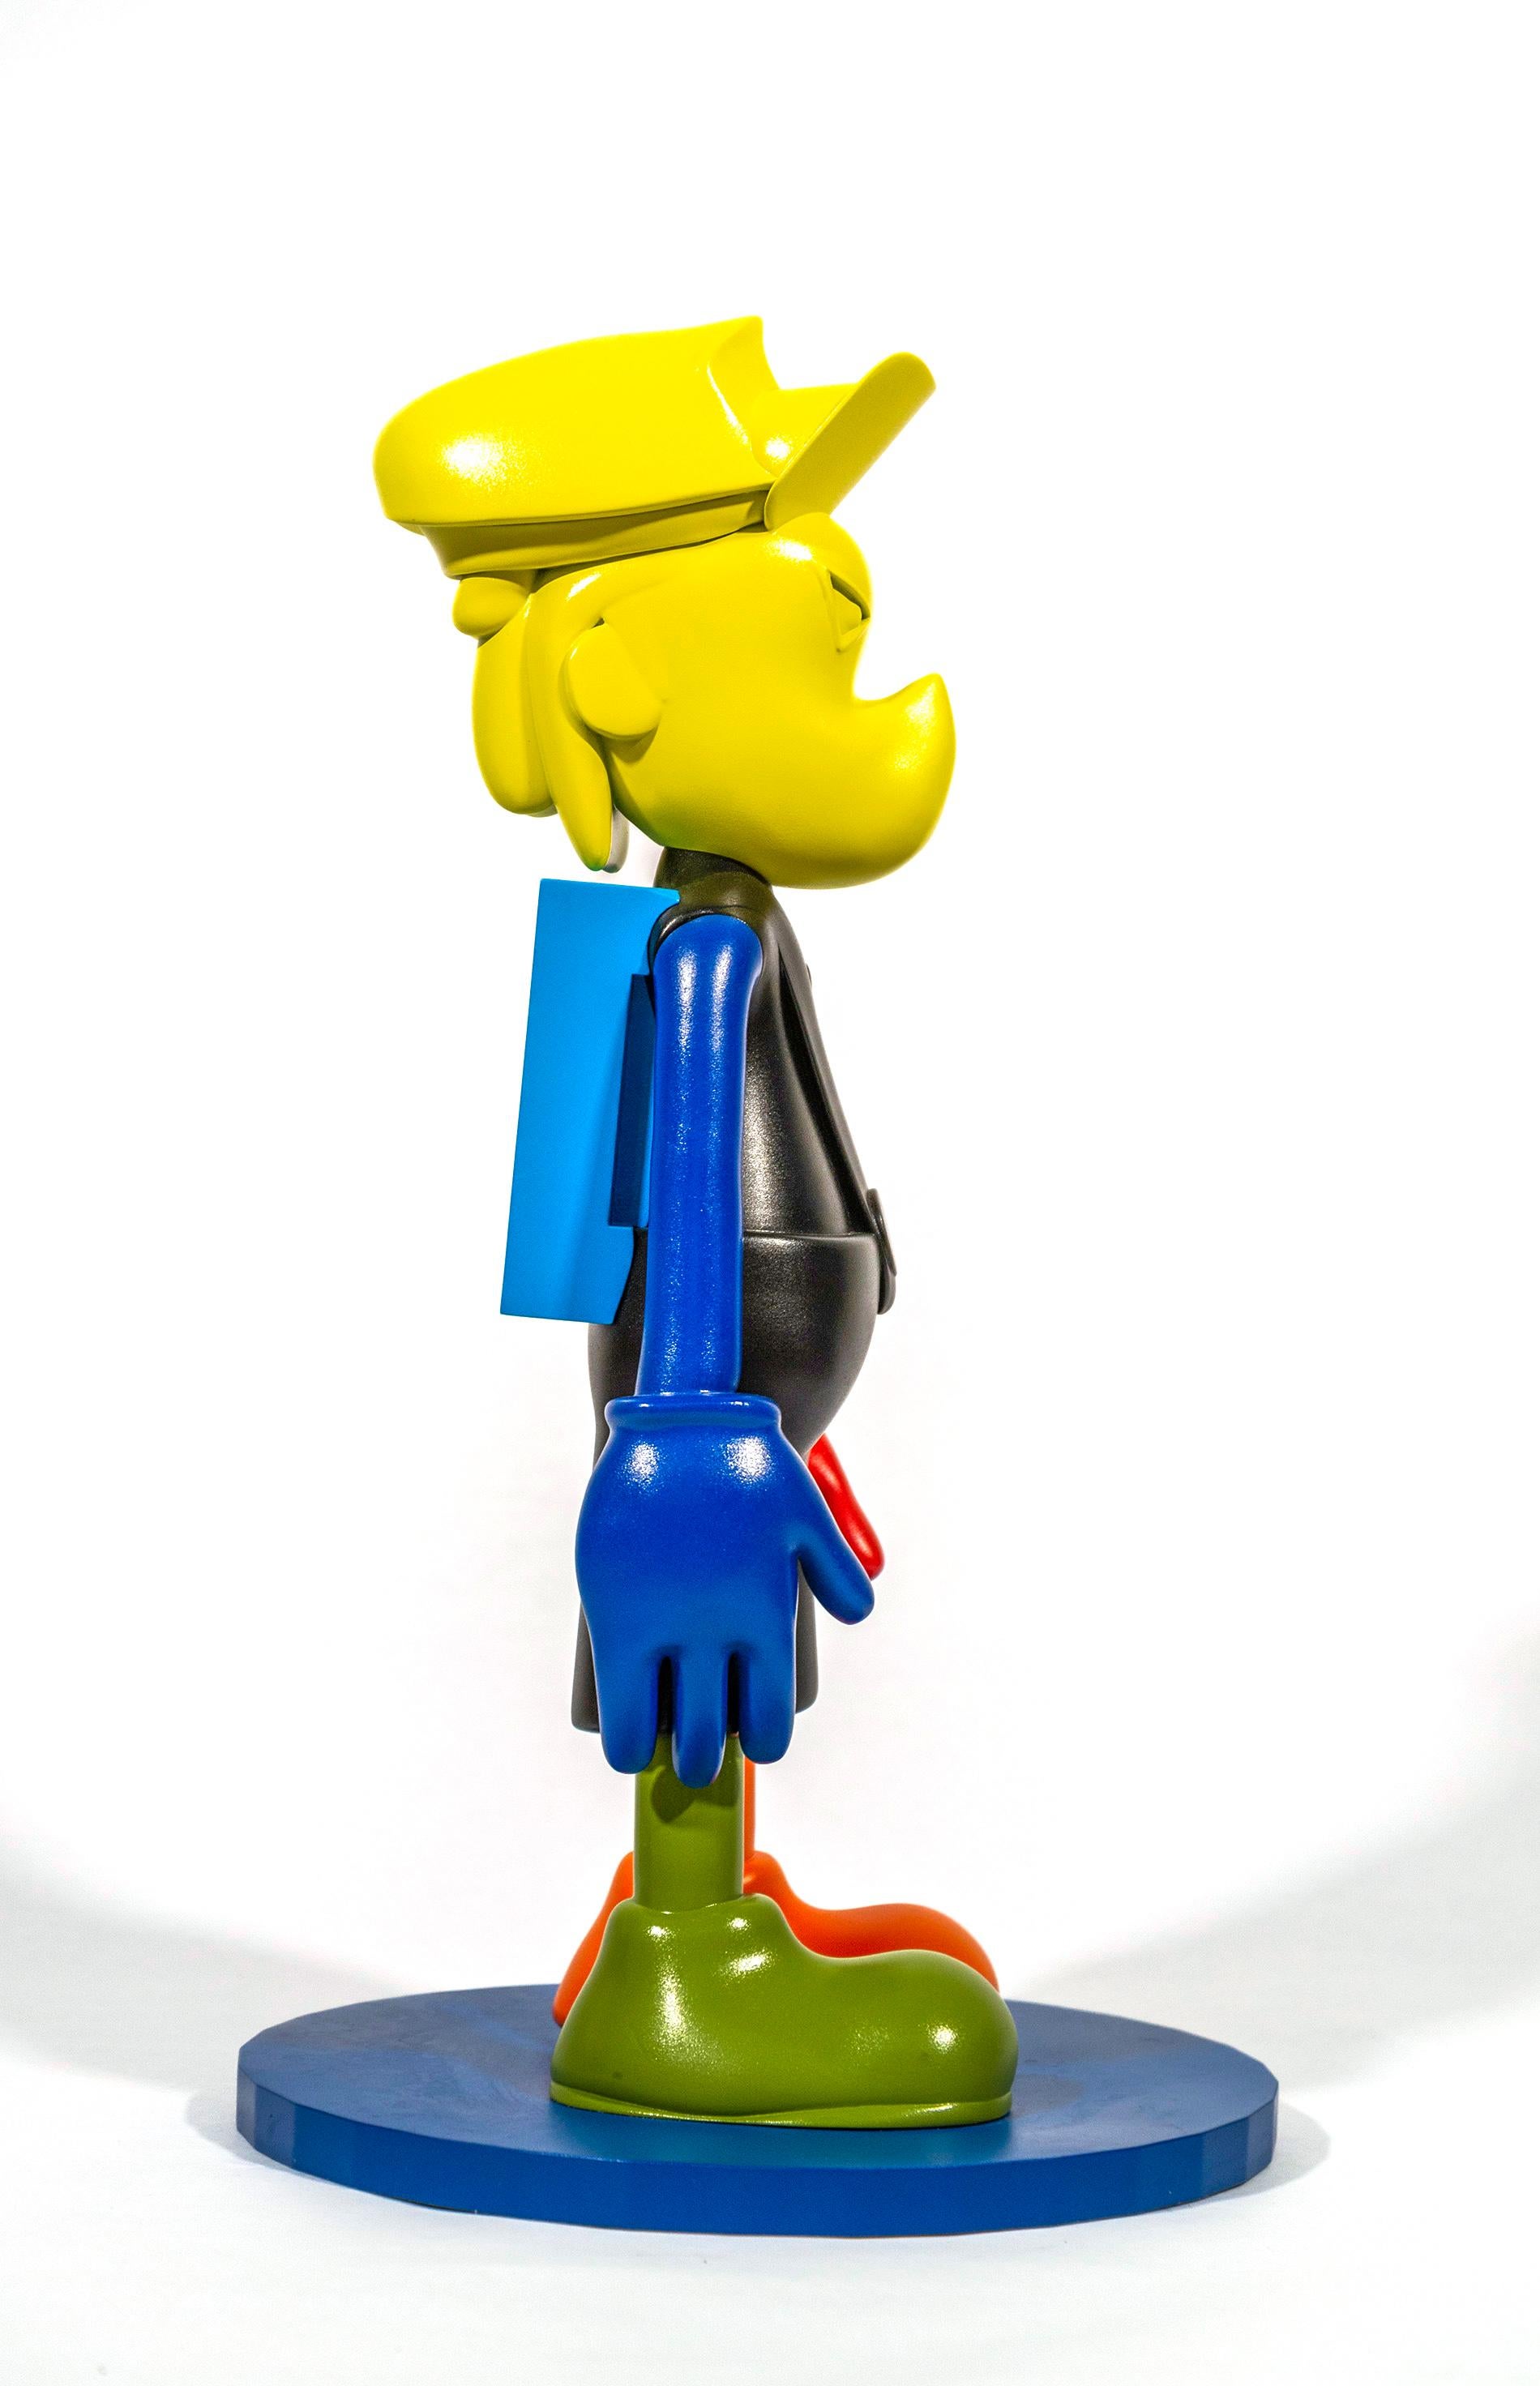 Ludique, colorée et imaginative, la dernière série de sculptures de Viktor Mitic semble fusionner le pop art et la science-fiction. La palette de couleurs vert, noir, jaune et orange se combine pour former un objet de collection amusant, lumineux et